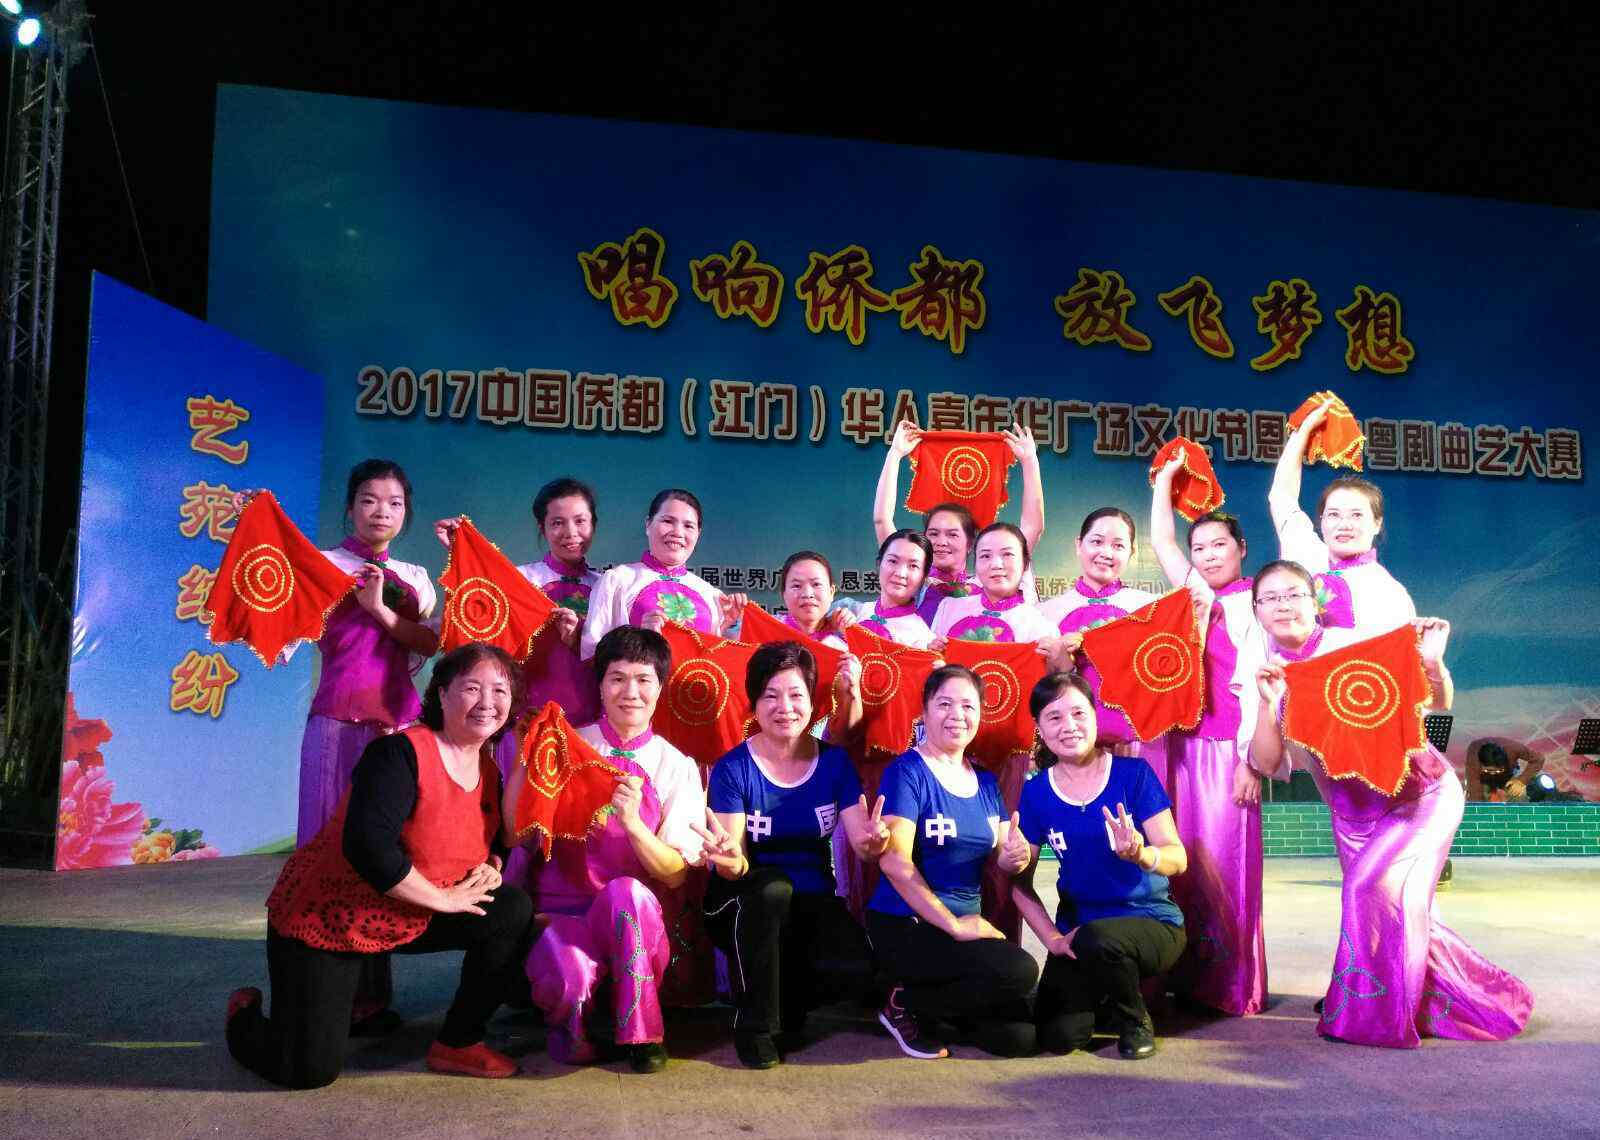 江门嘉年华 年华俱乐部亮相2O17中国侨都华人嘉年华广场文化节。